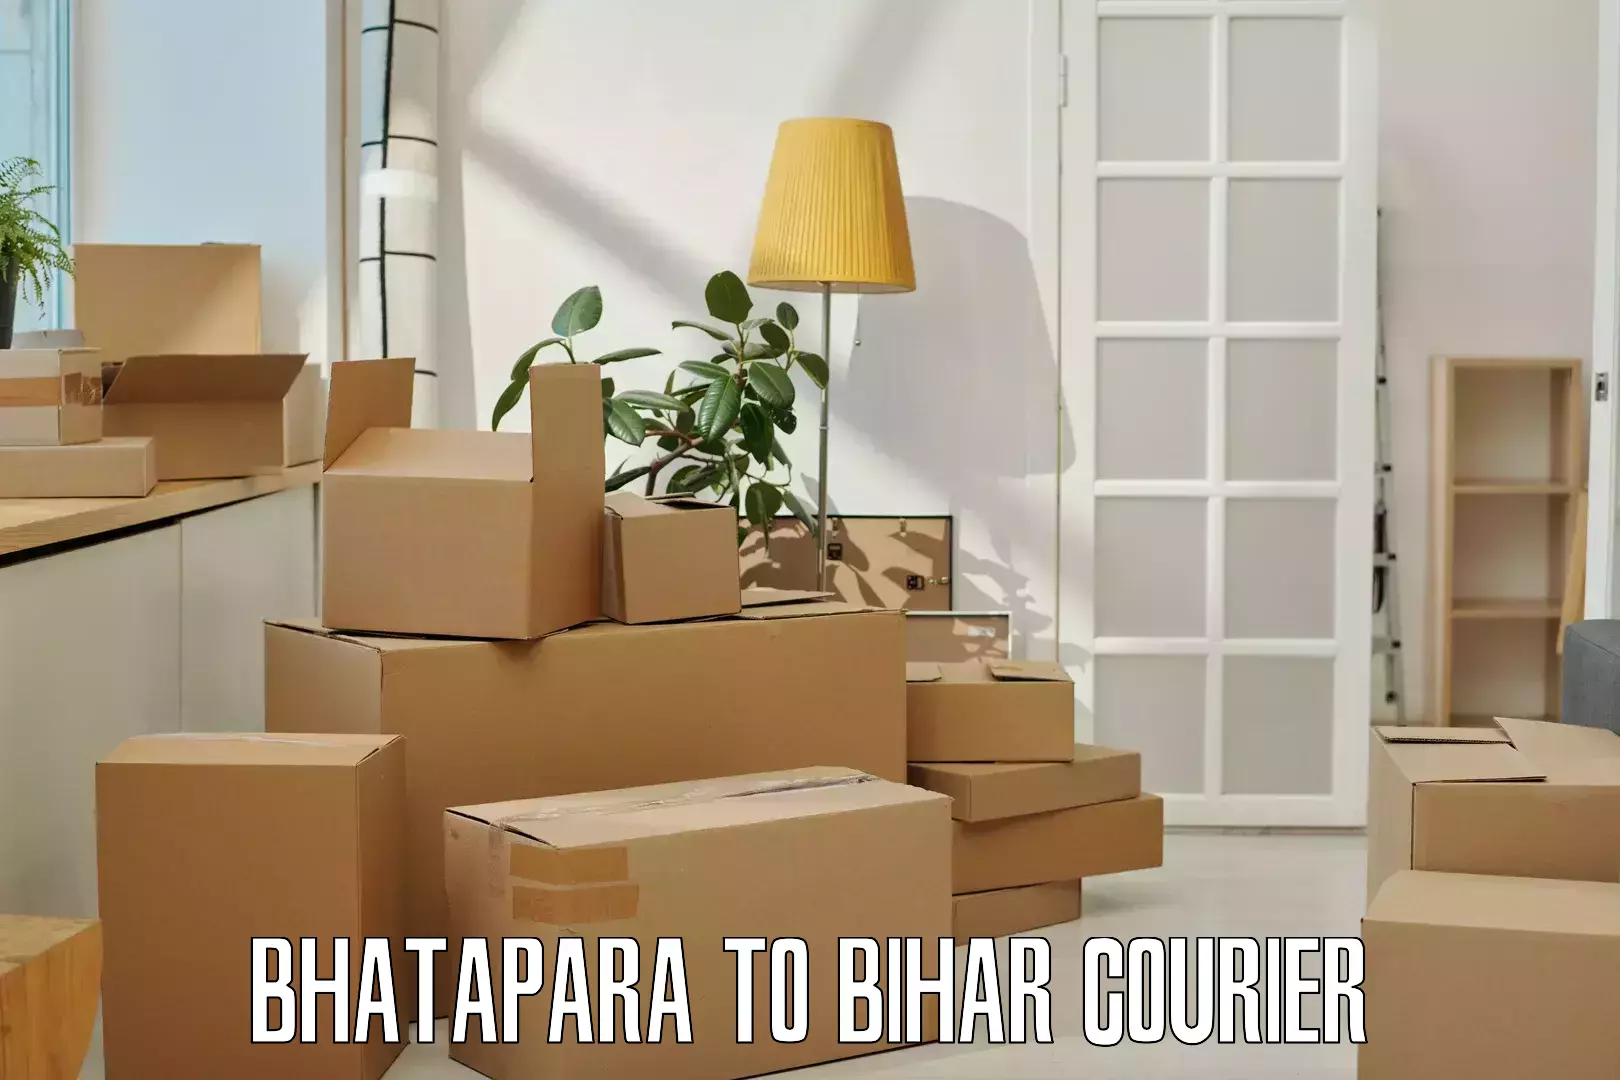 Courier app Bhatapara to Mohiuddin Nagar